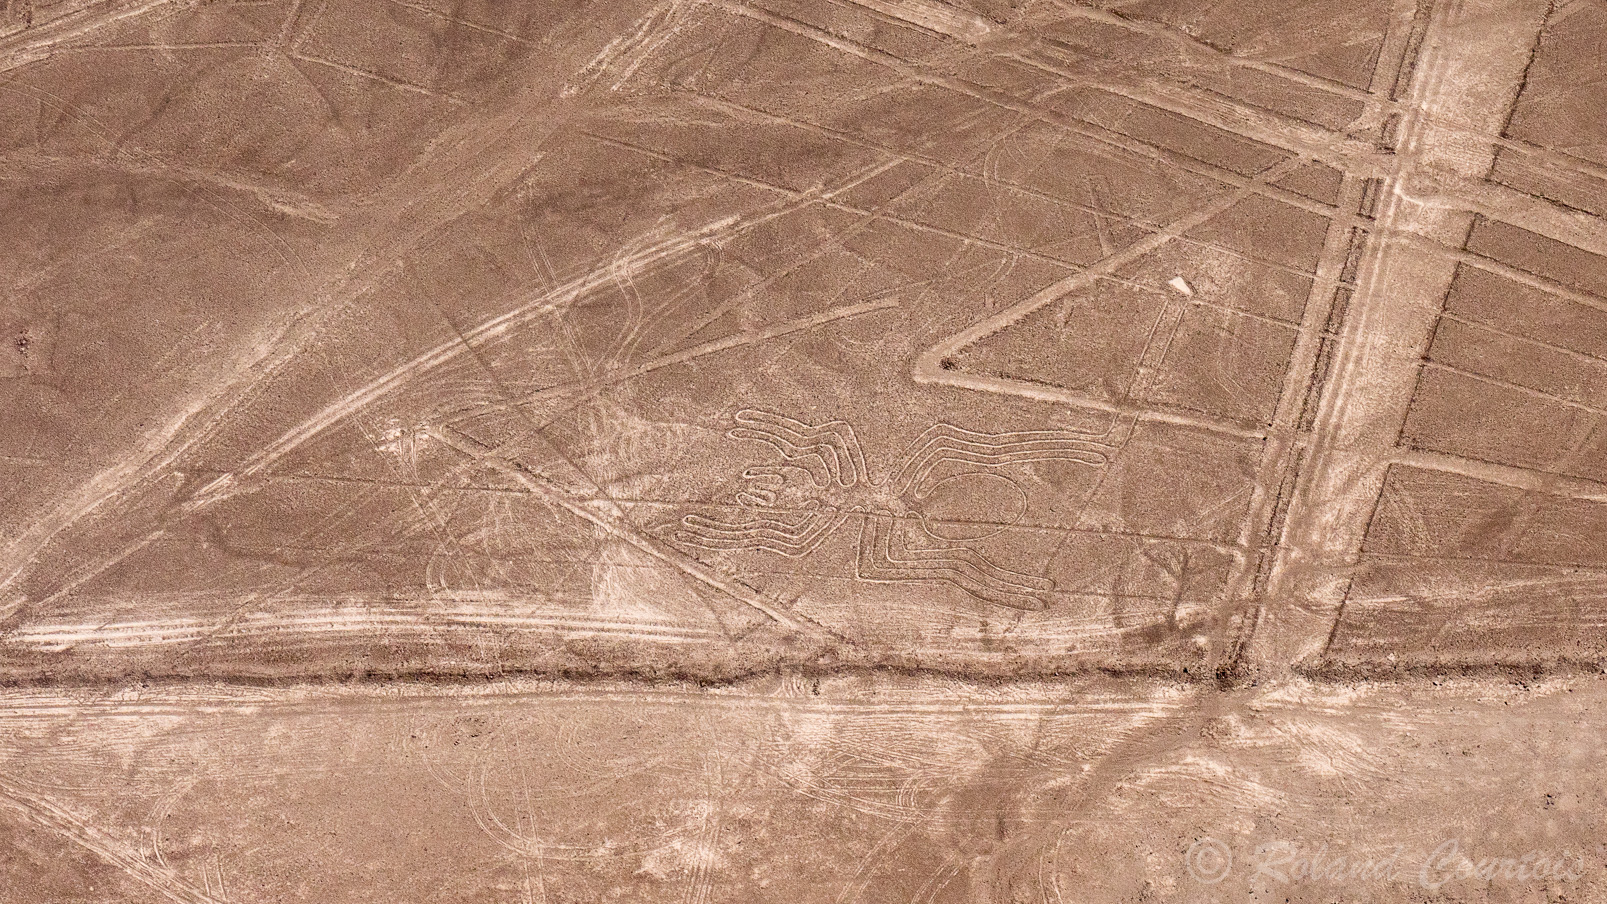 Découverte des lignes de Nazca. Araignée